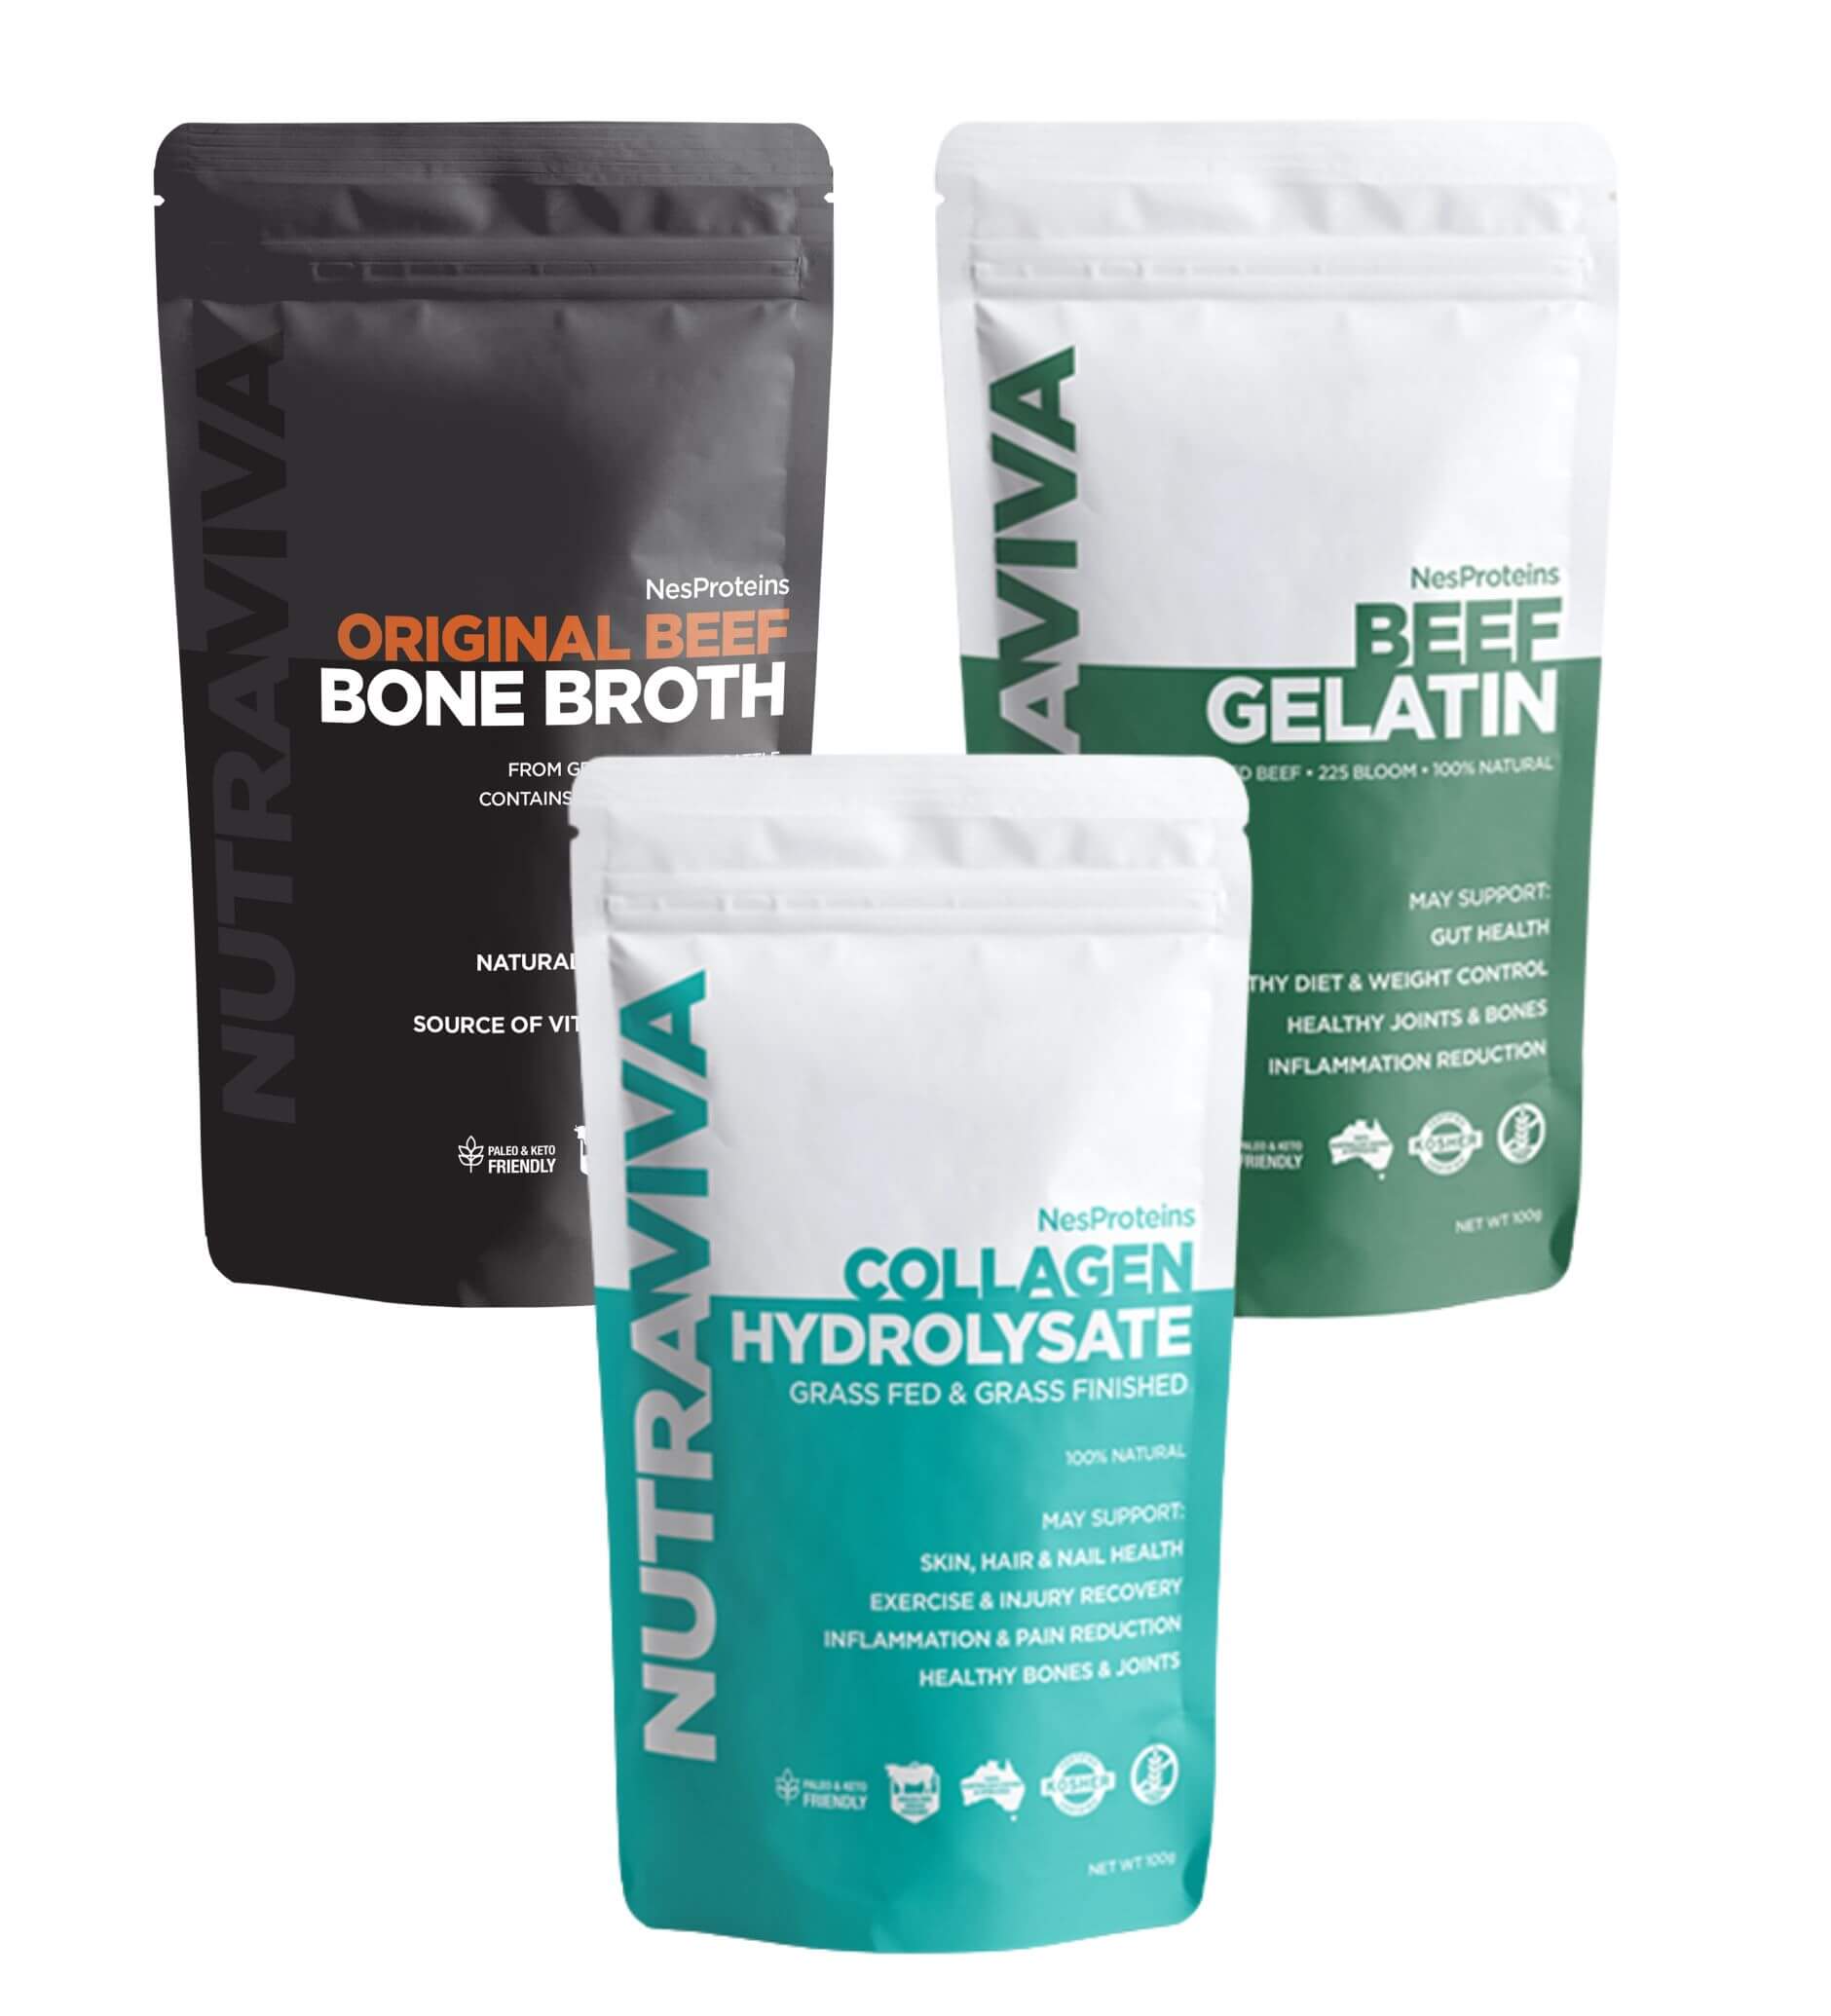 Start Well: Collagen 100g + Gelatin 100g + Bone Broth 100g